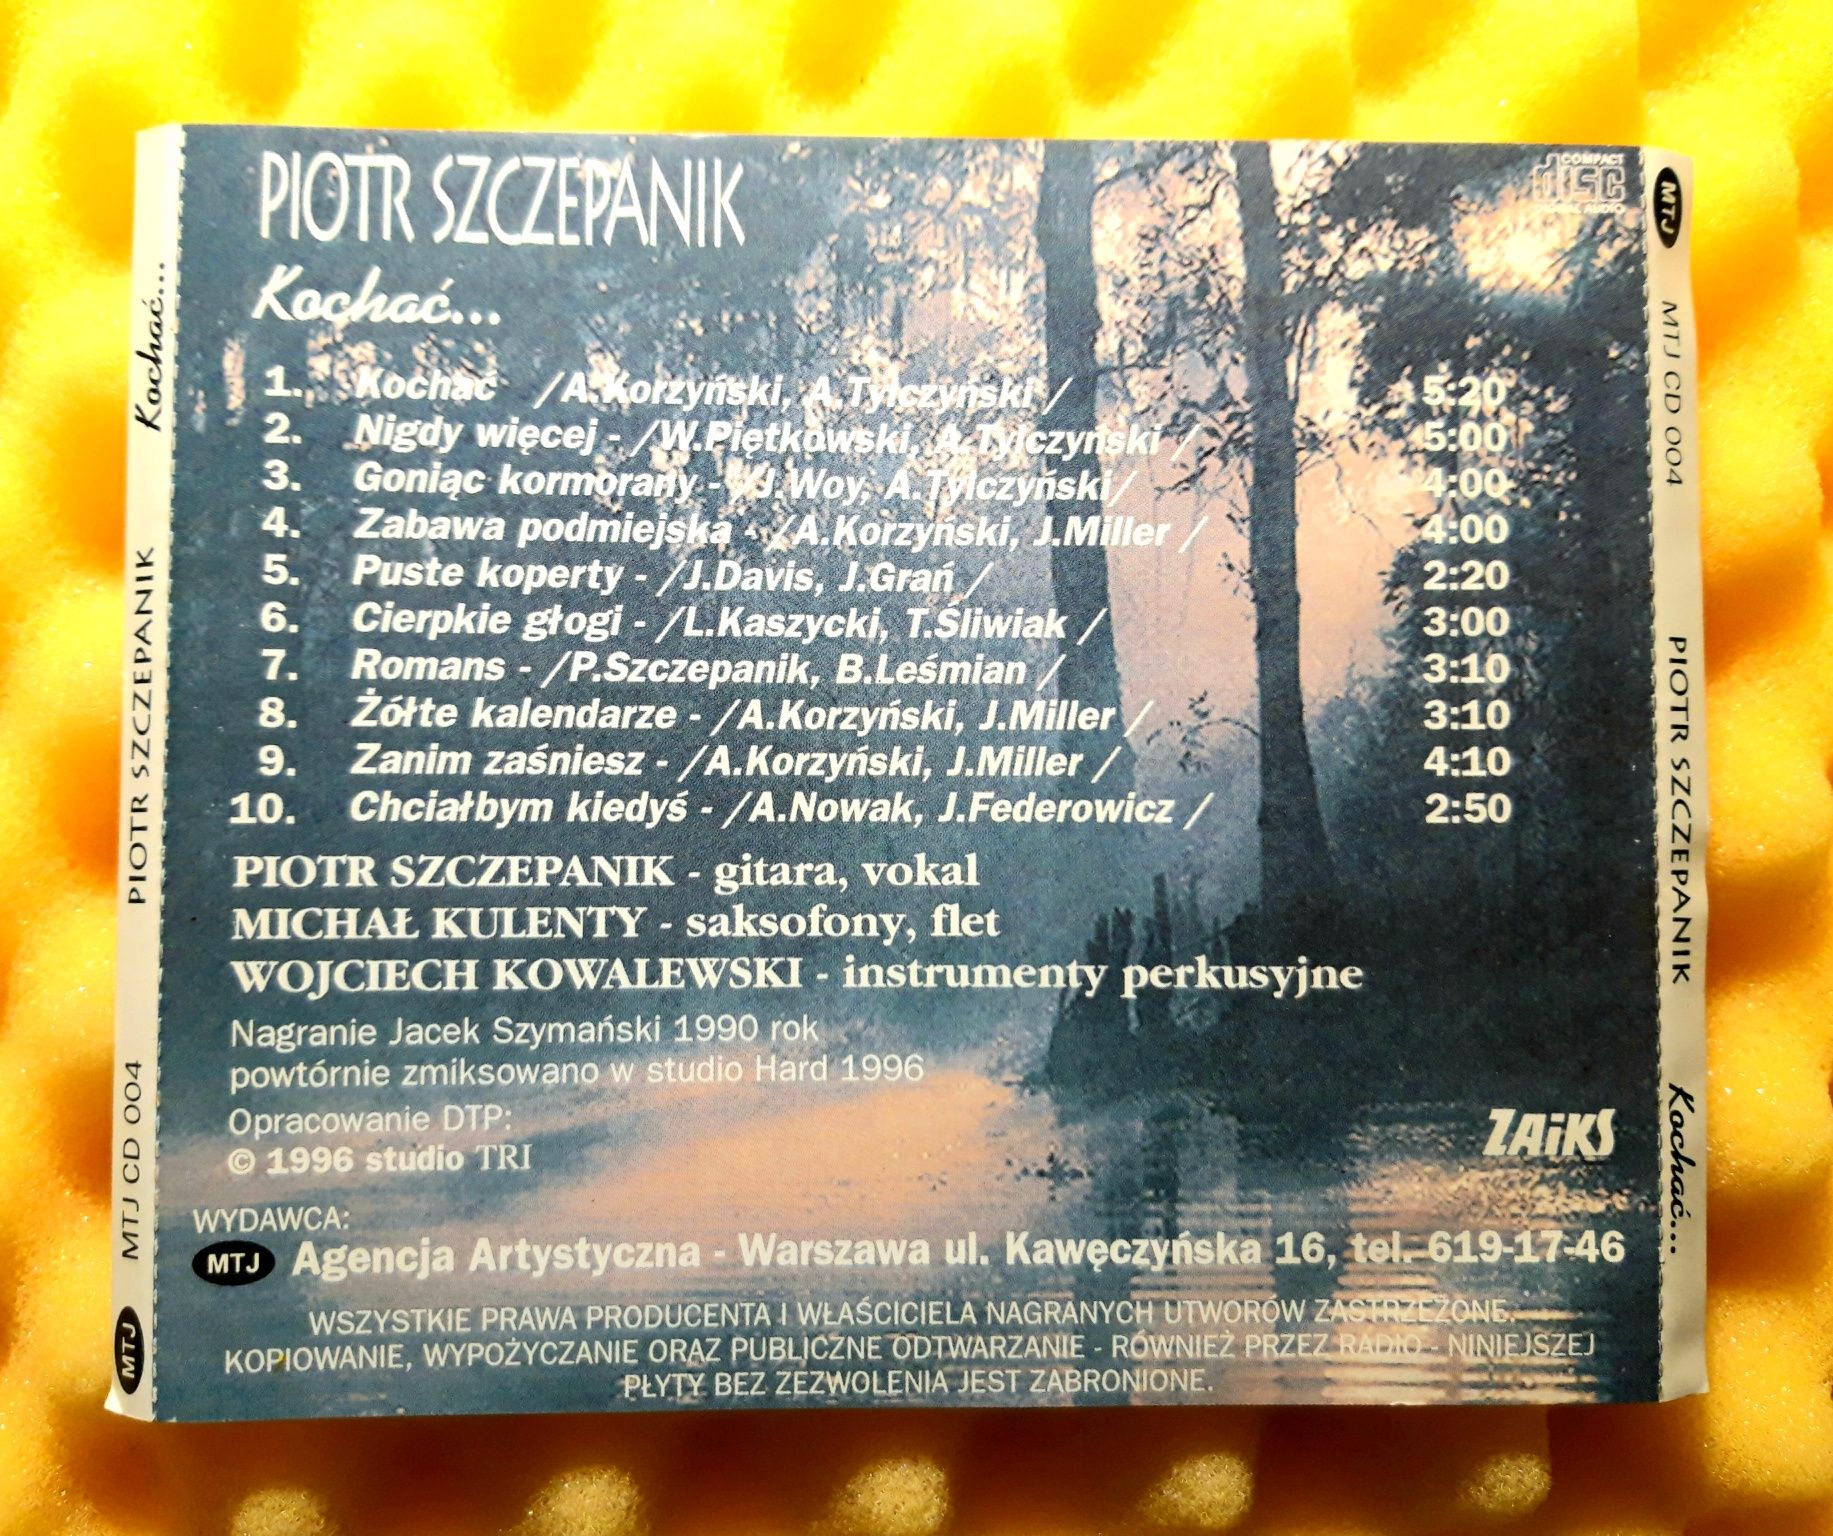 Piotr Szczepanik - Kochać (CD, 1996)